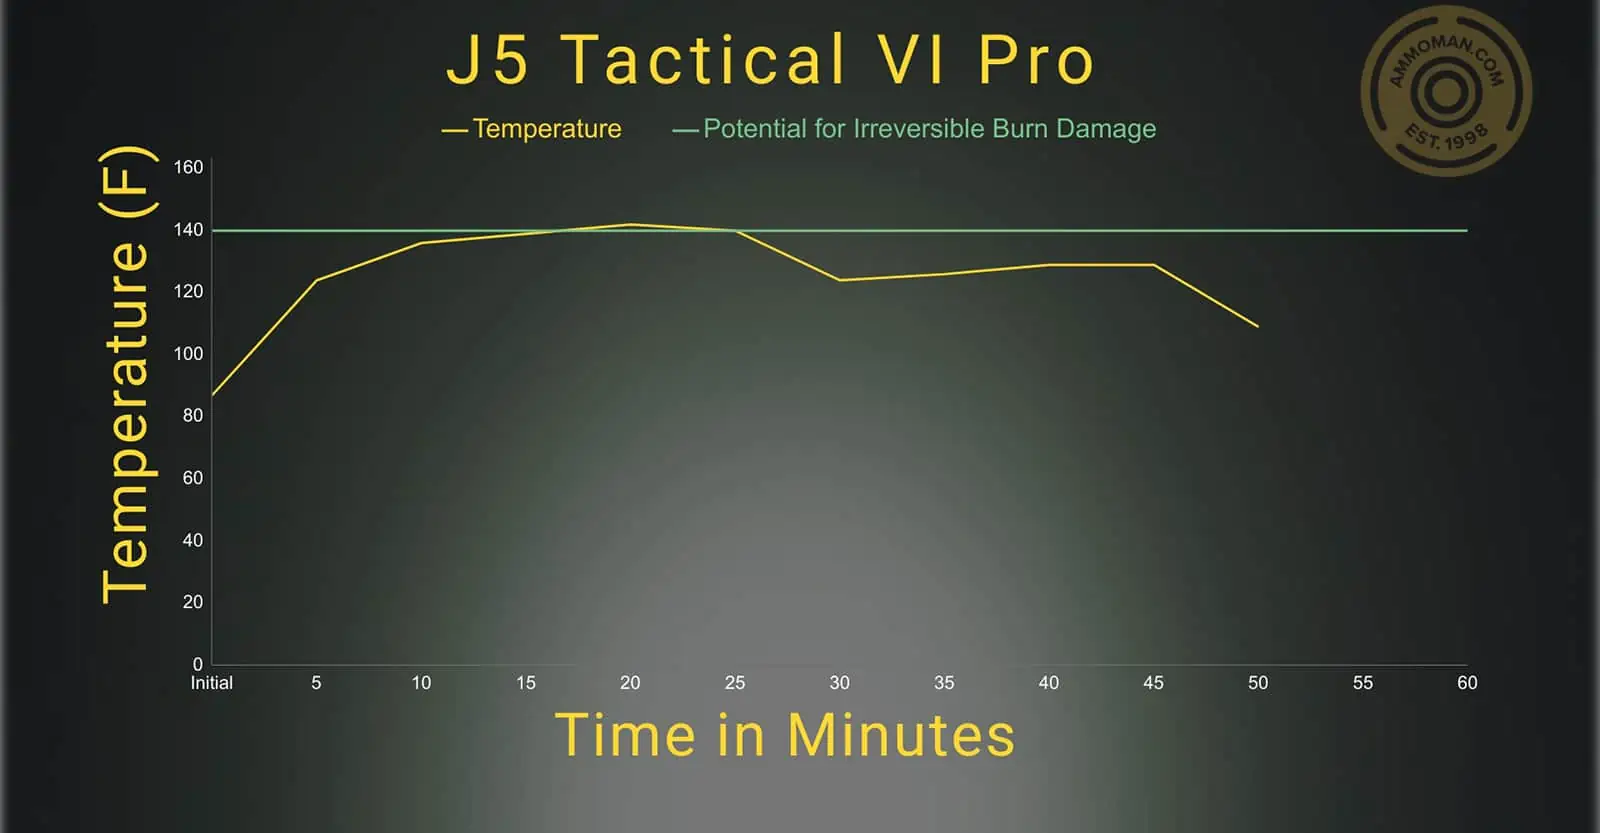 J5 Tactical V1 Pro temperature profile